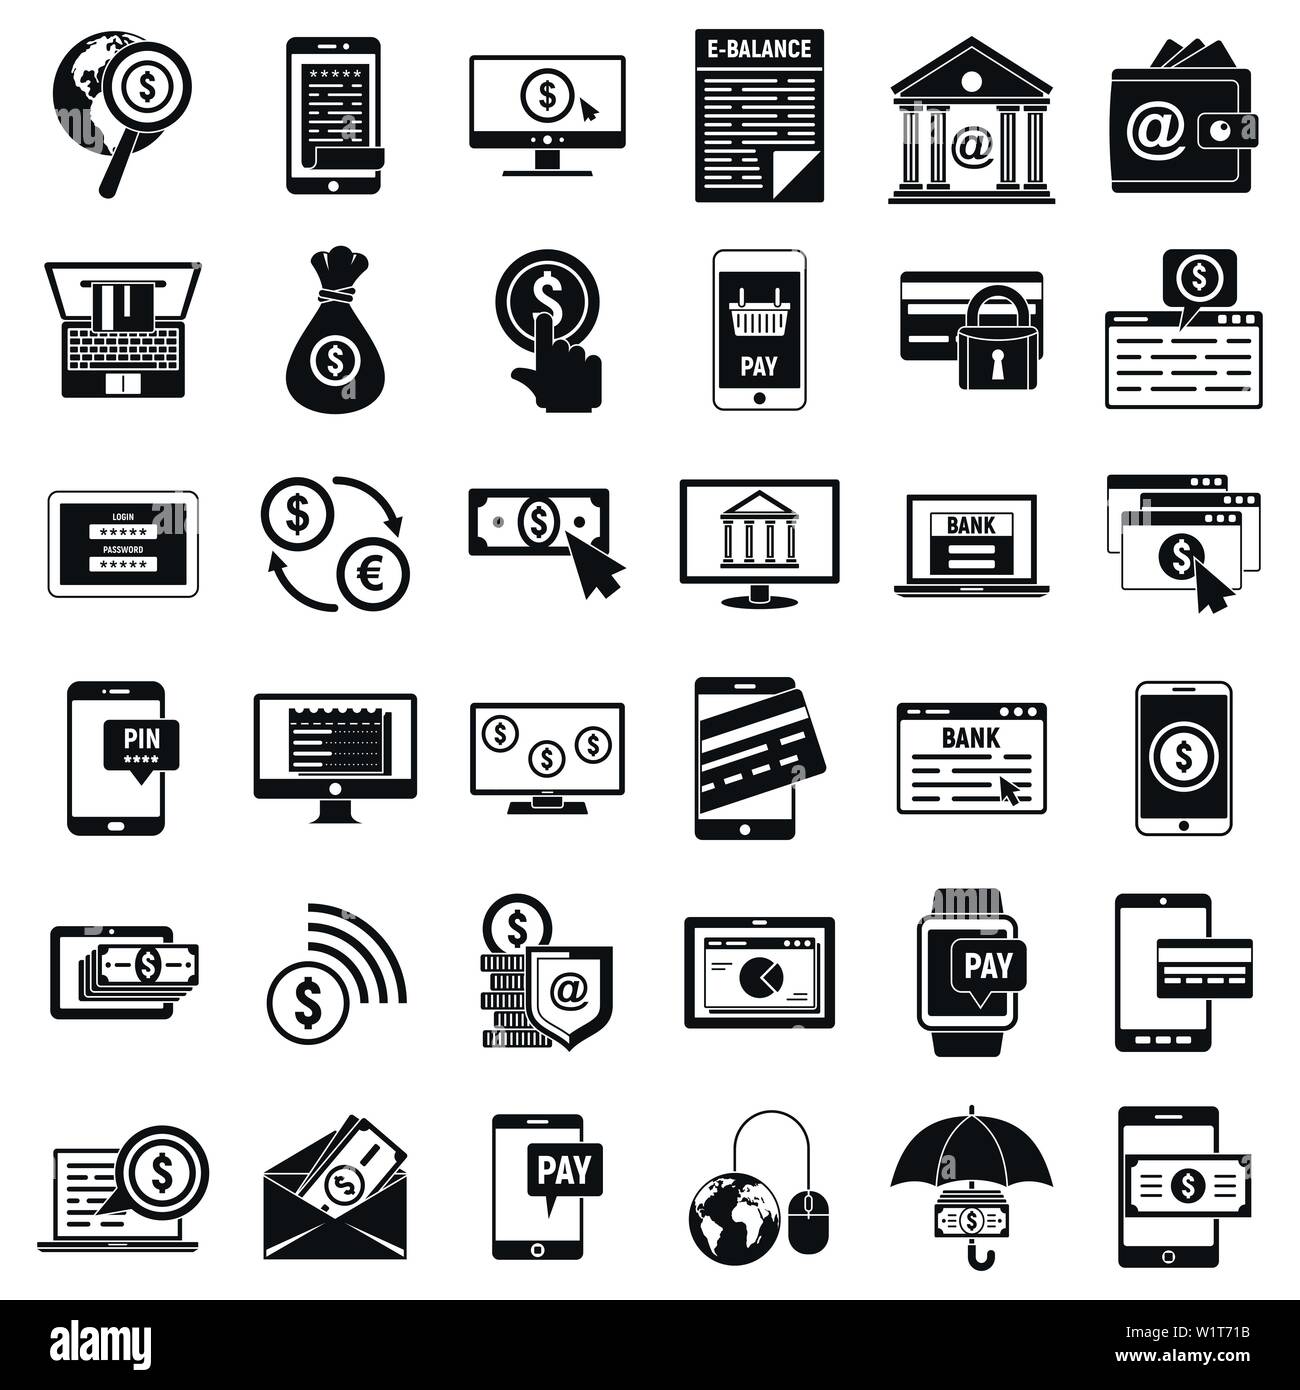 De l'argent internet banking icons set. Simple jeu d'argent internet banking icônes vectorielles pour le web design sur fond blanc Illustration de Vecteur